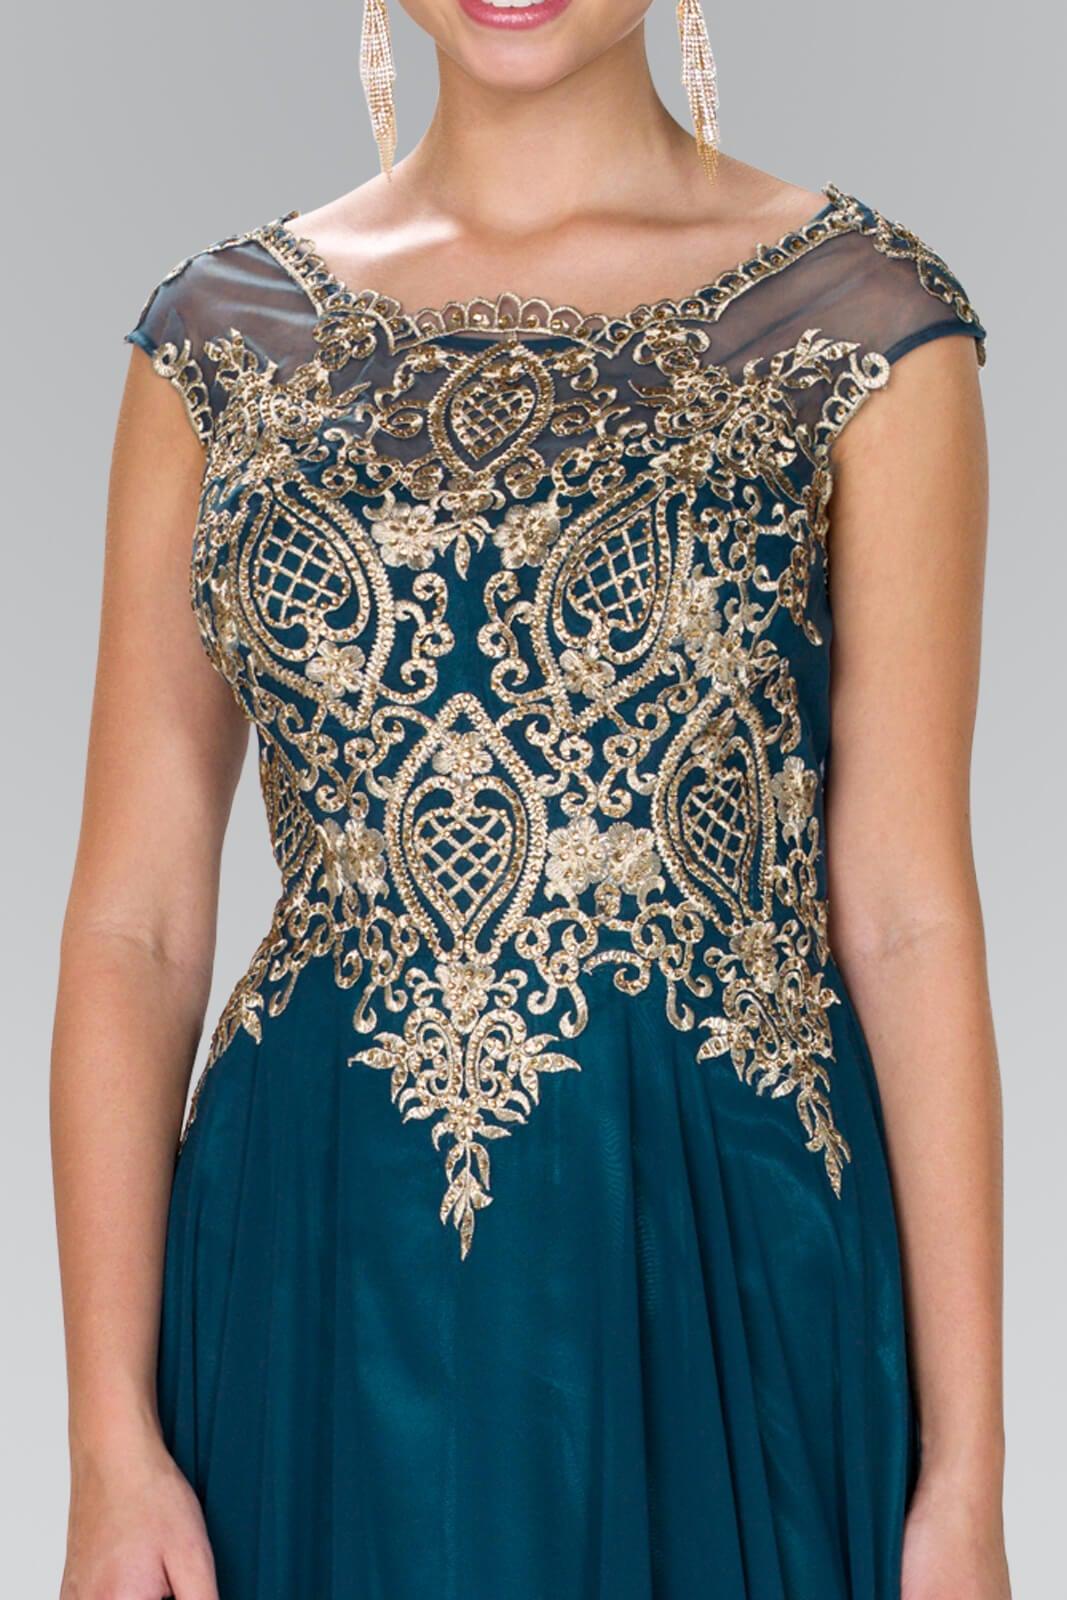 Long Formal Plus Size Evening Dress - The Dress Outlet Elizabeth K